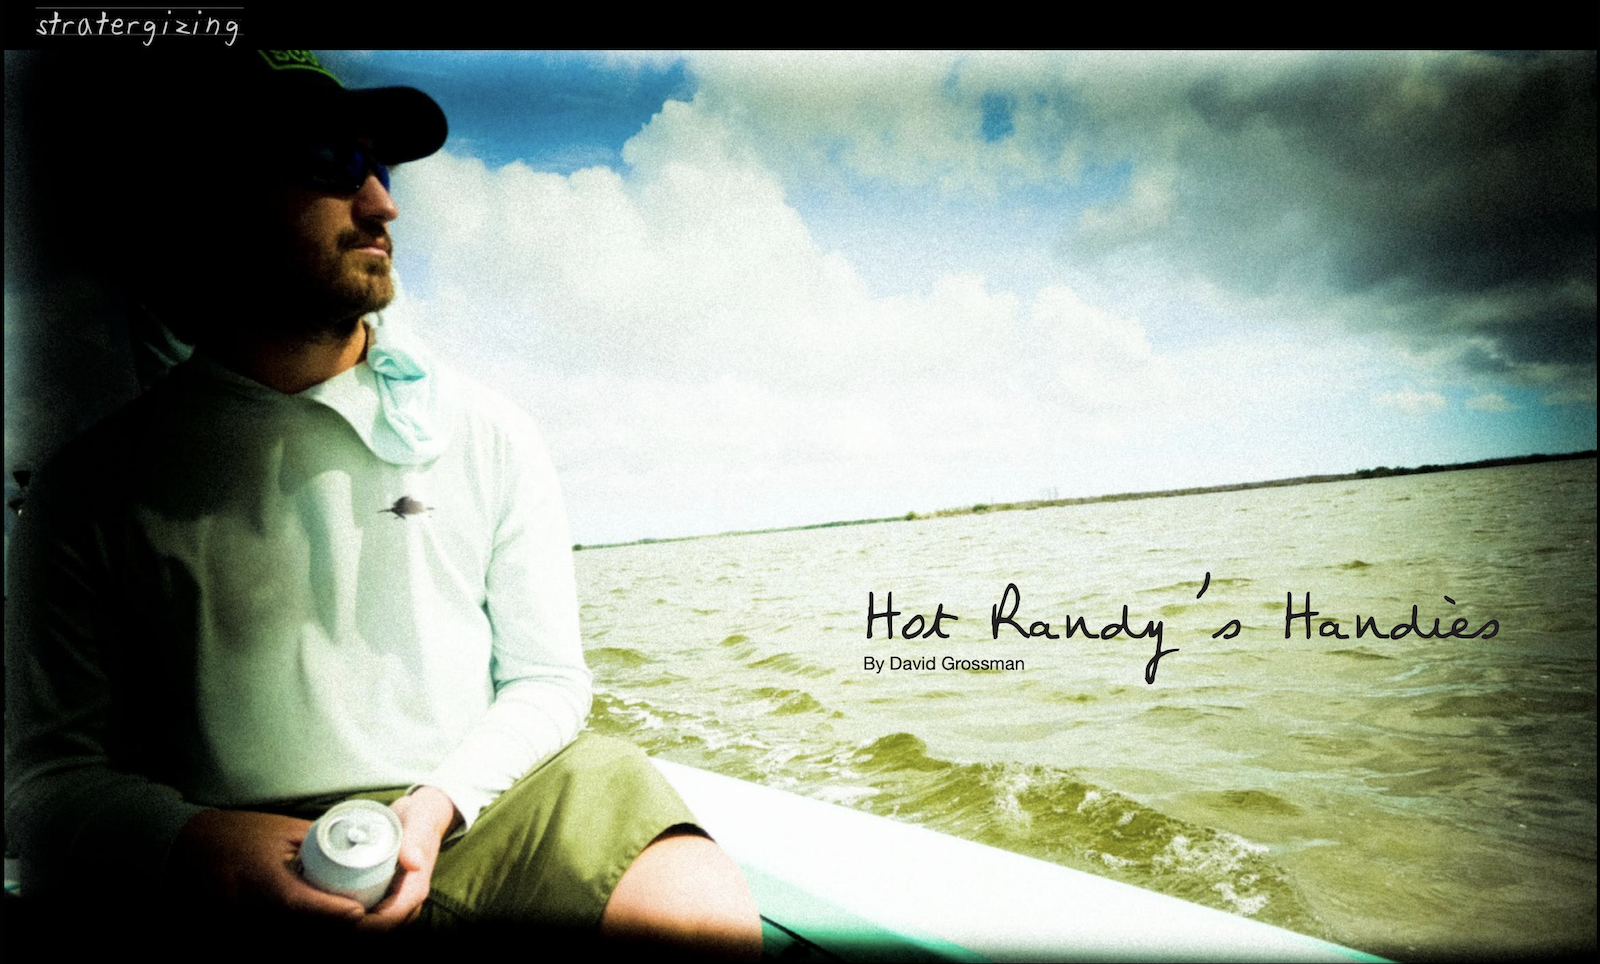 Hot Randy’s Handies